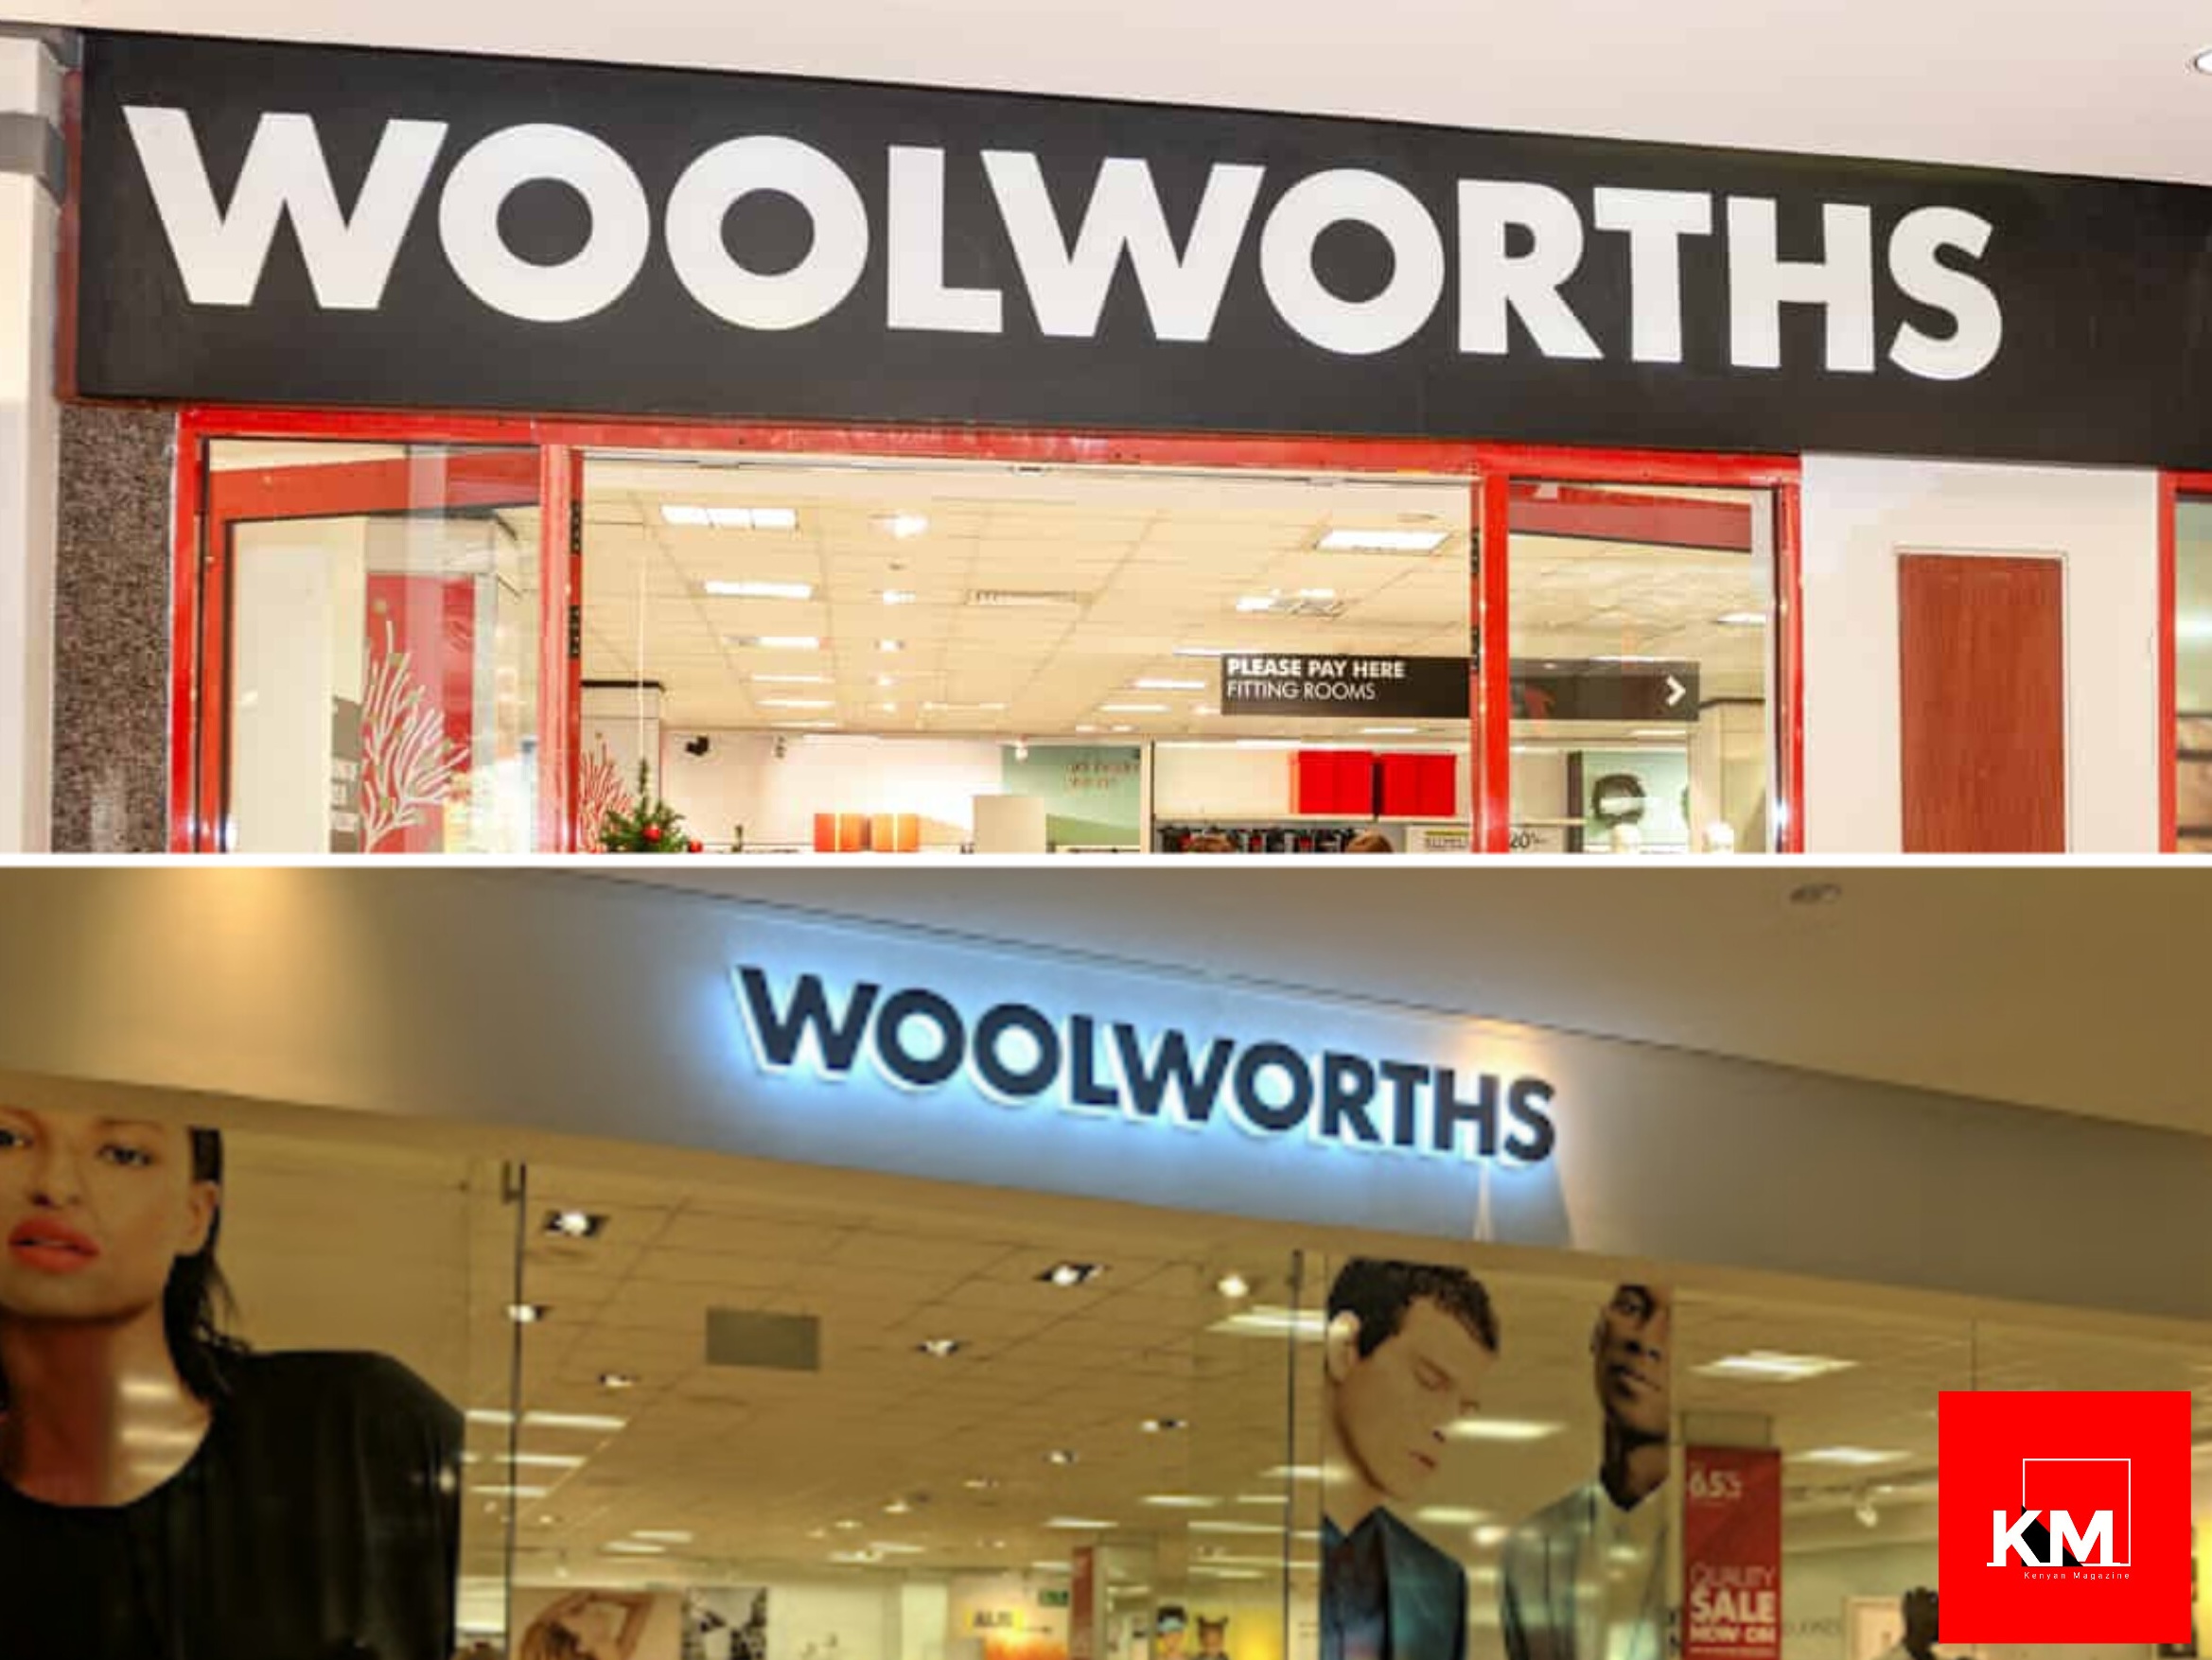 Woolworths stores in Kenya